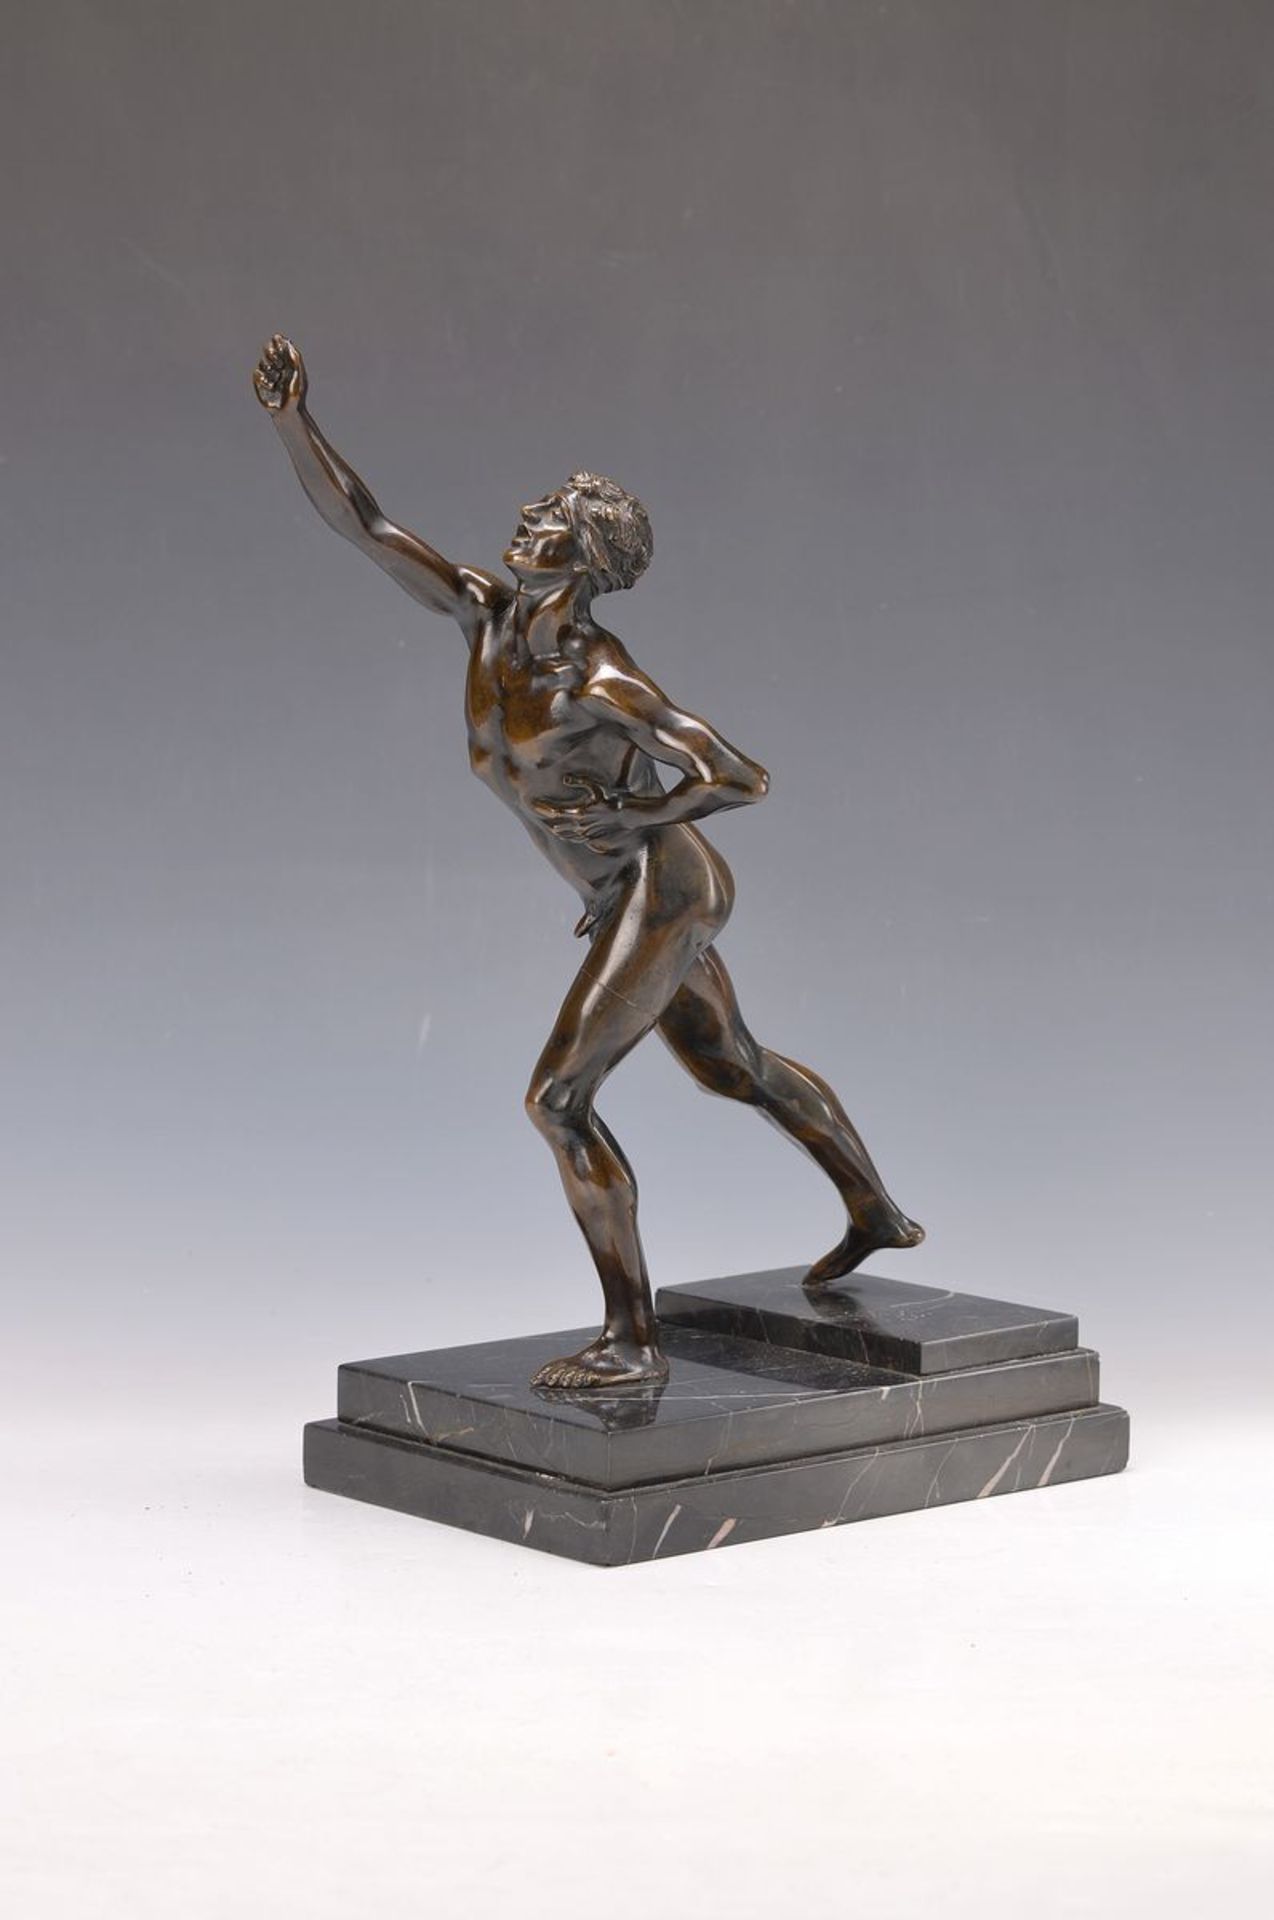 Bronzefigur, deutsch, um 1920, antiker Athlet, Attribut in der Hand fehlt, auf getrepptem